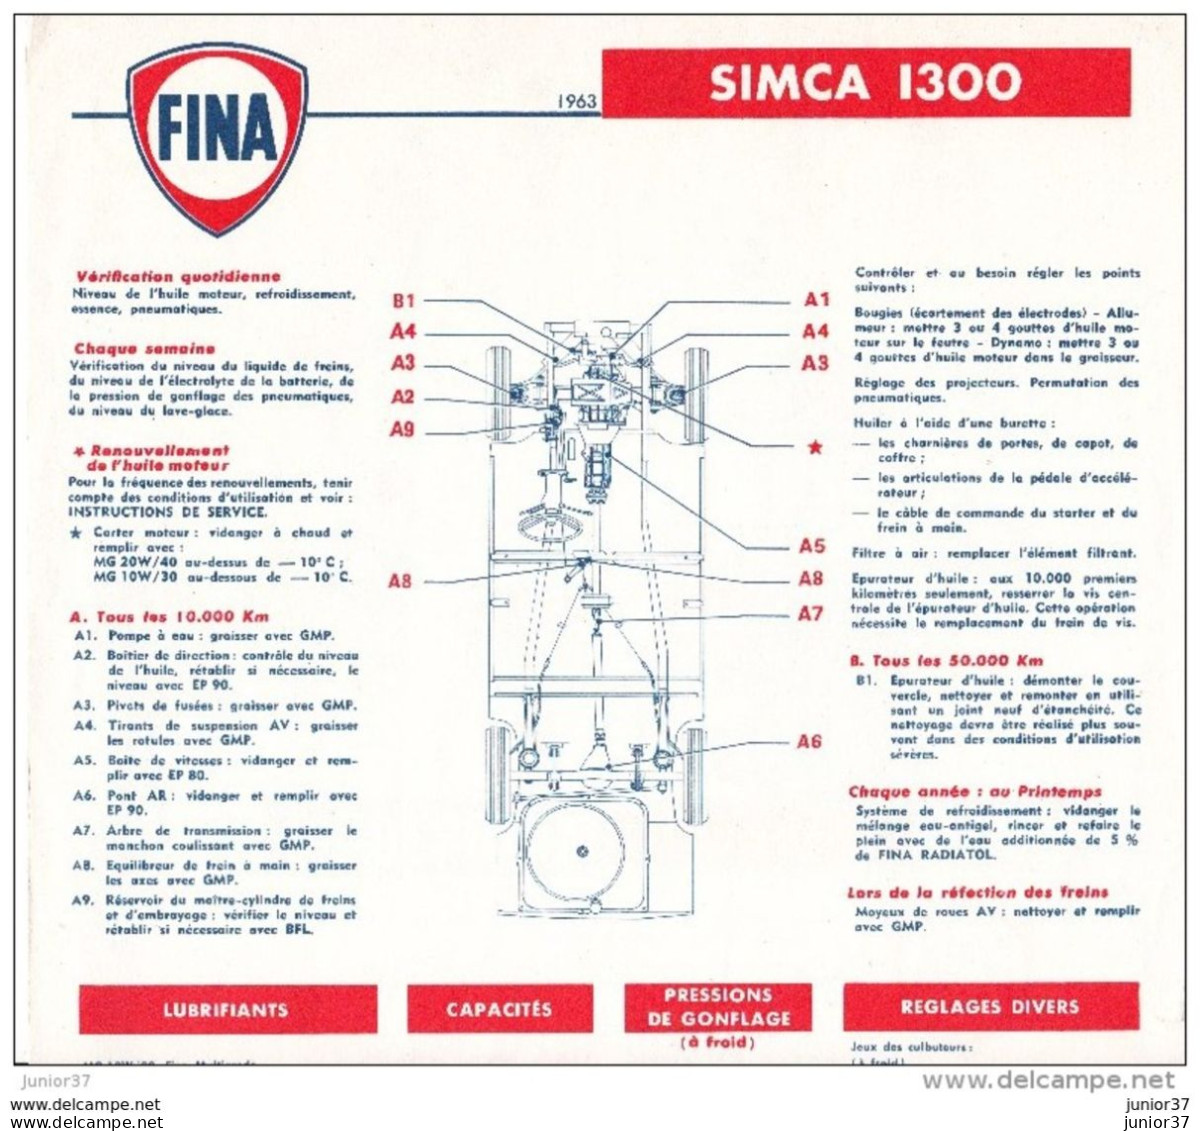 Feuillet Plan De Controle De Vérification De Simca 1300 1963 , Fina - Advertising